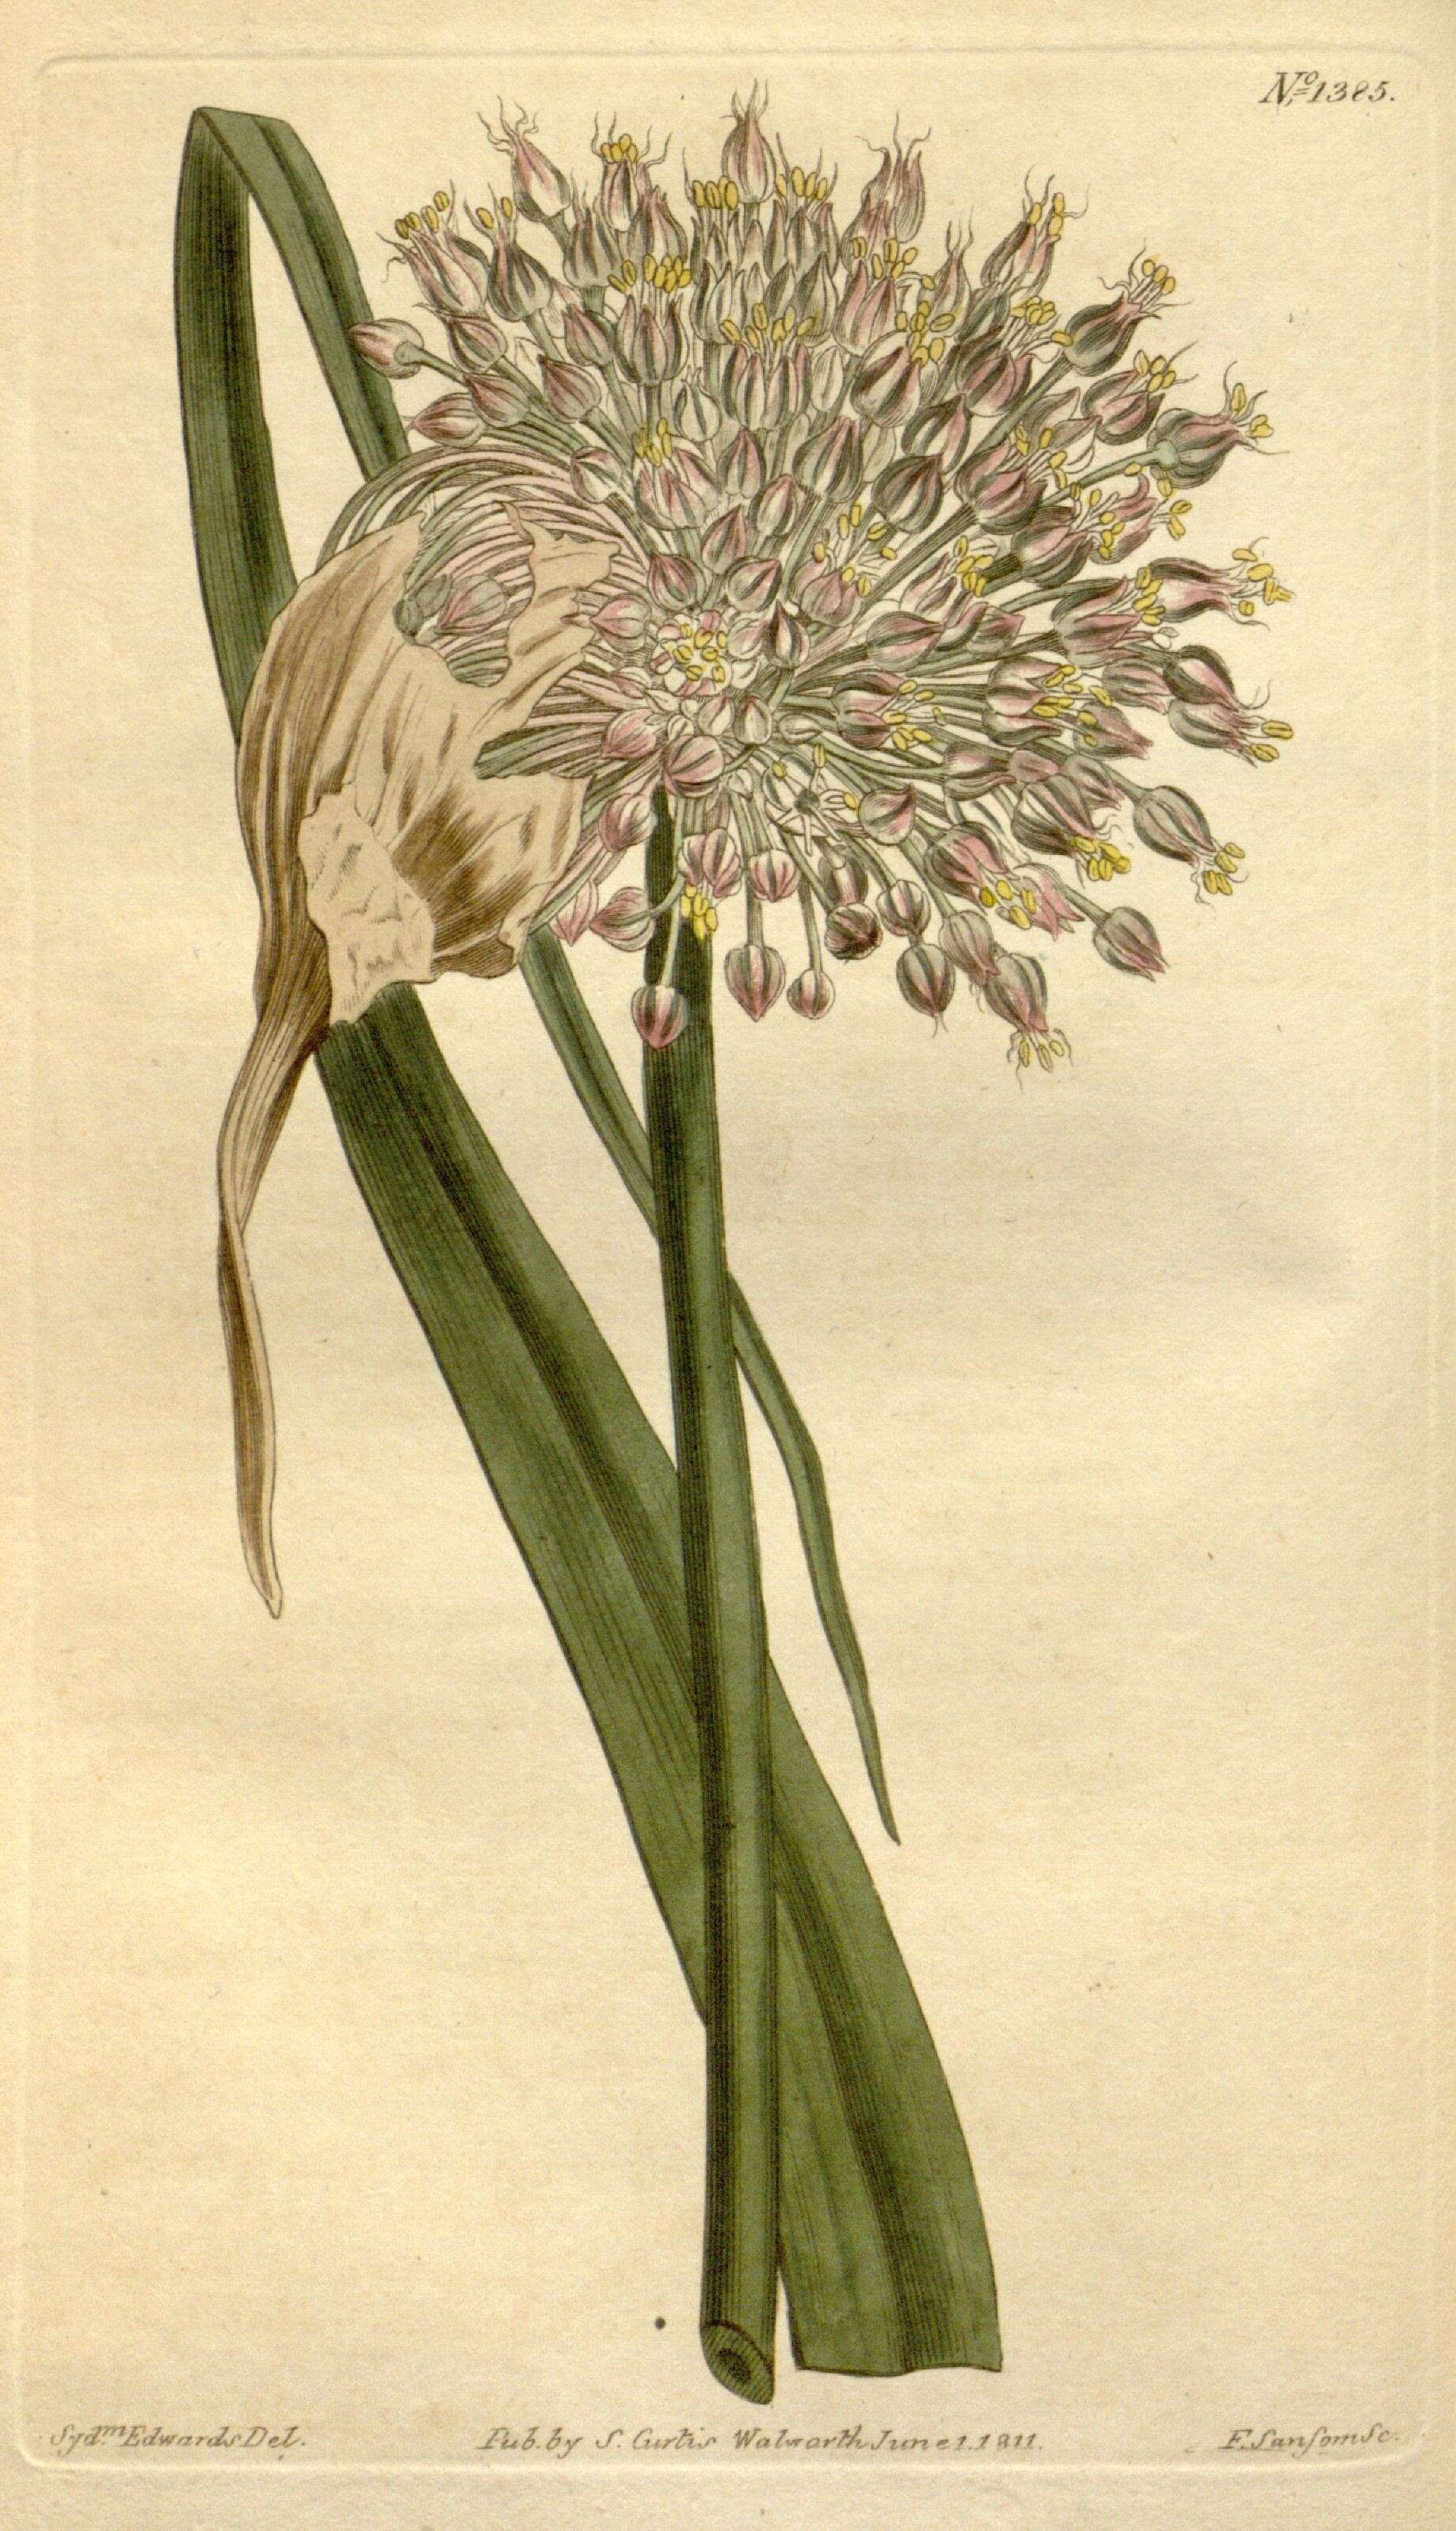 Image of Amaryllidaceae